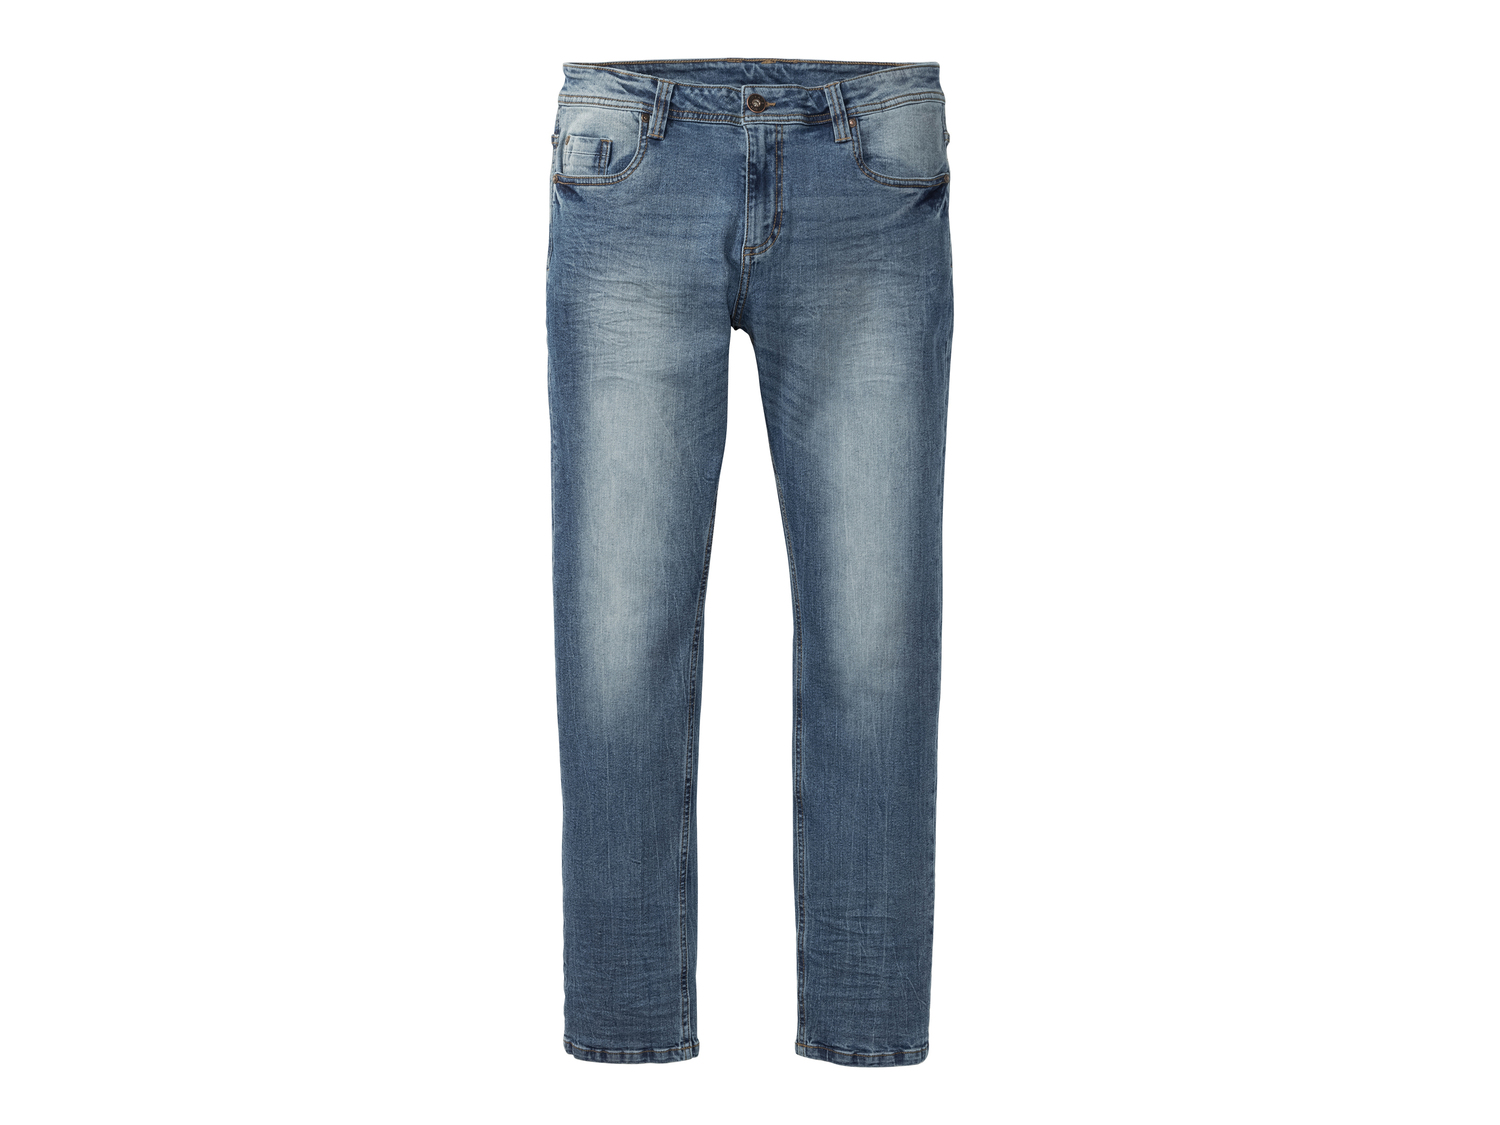 Jeans Slim Fit da uomo Livergy, prezzo 12.99 € 
Misure: 46-56 
- Rinforzo sulle ...